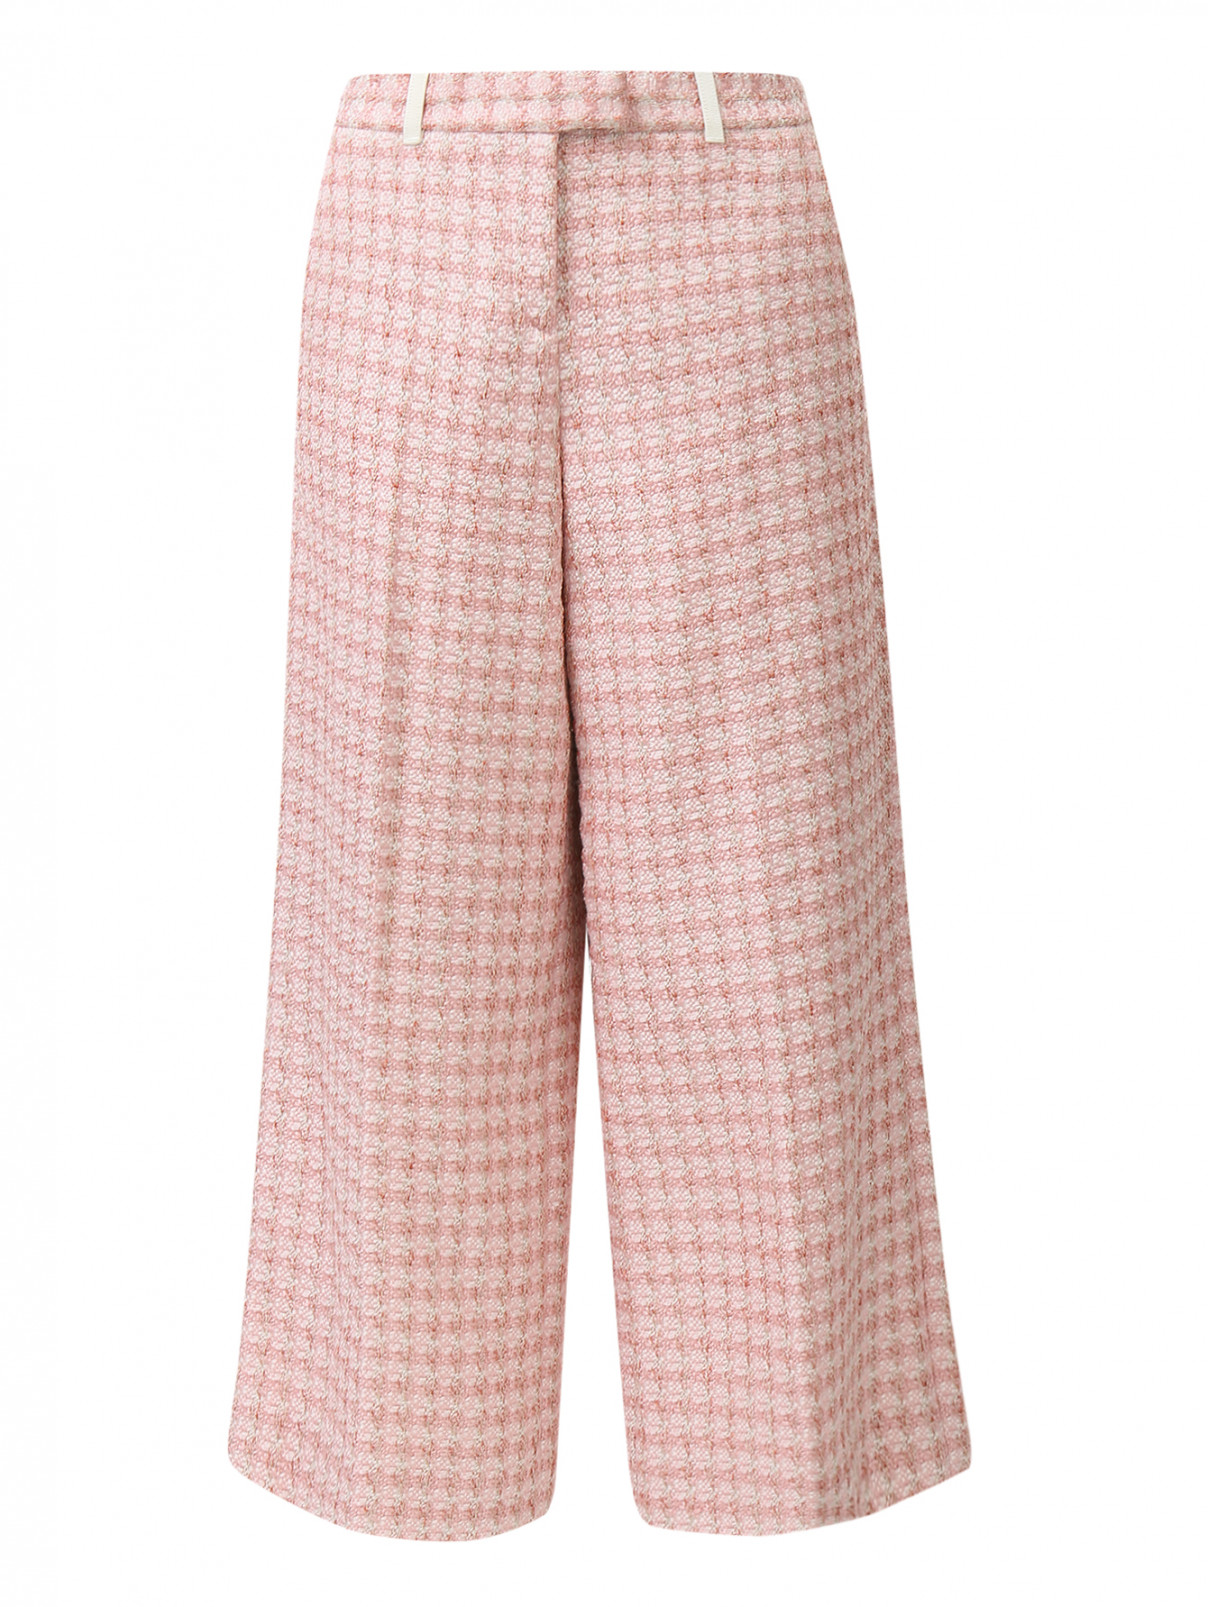 Кюлоты из фактурной ткани с узором "клетка" Moschino Cheap&Chic  –  Общий вид  – Цвет:  Розовый